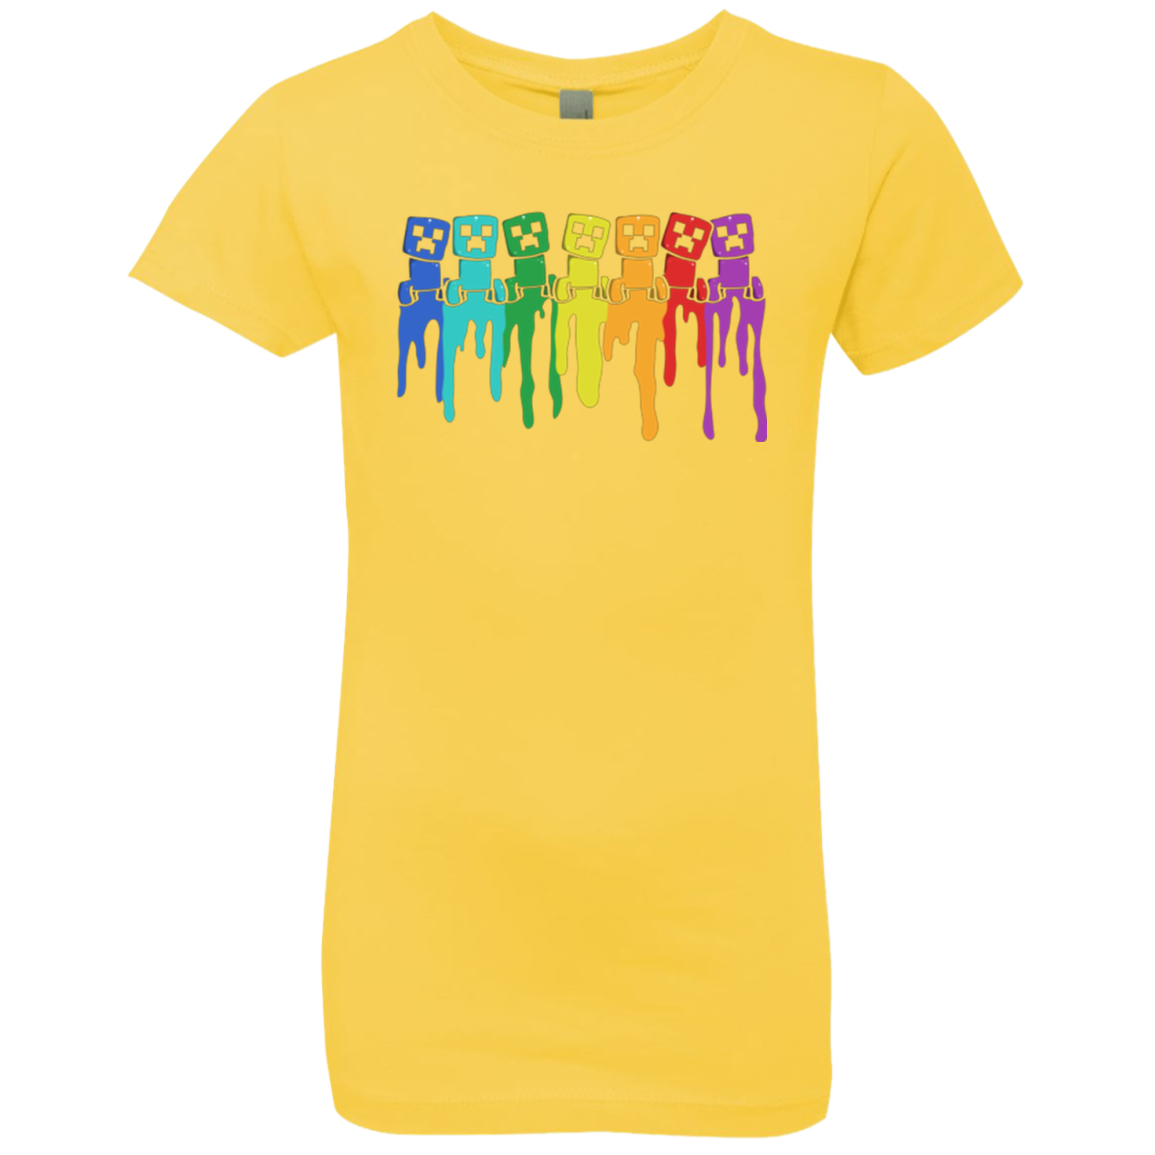 Rainbow Creeps Girls Premium T-Shirt